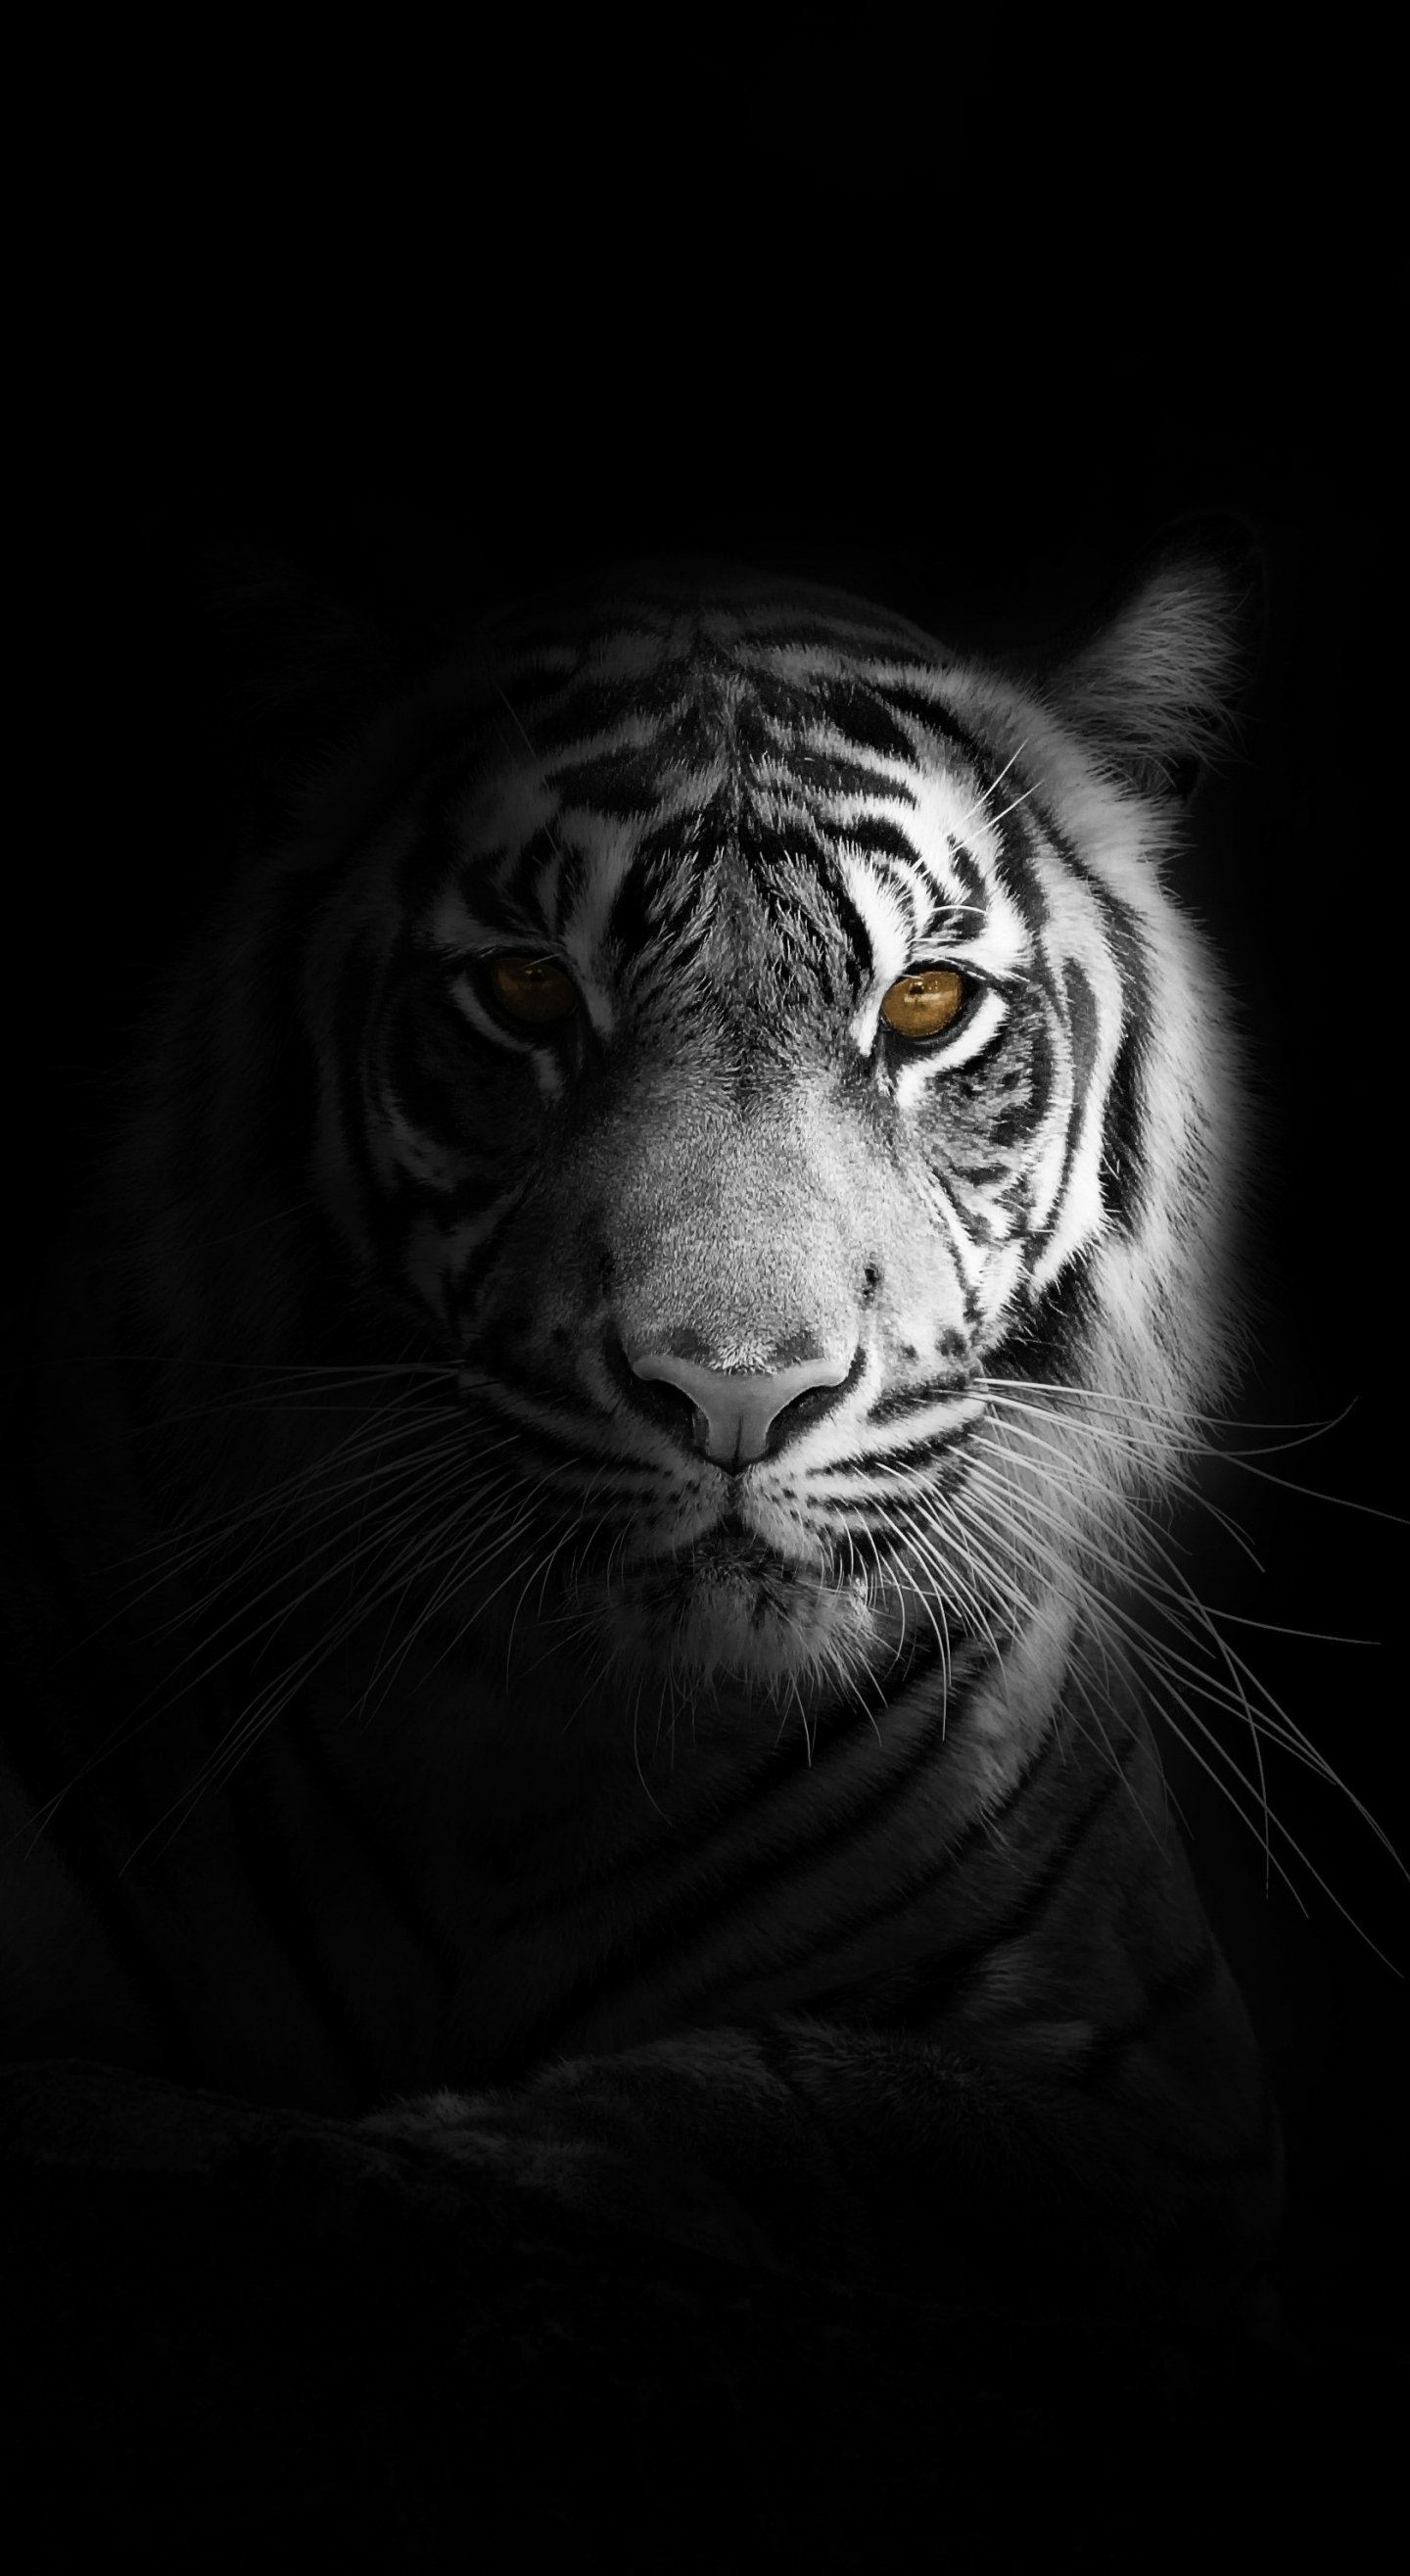 Download 1440x2630 wallpaper portrait, minimal, white tiger, dark, samsung galaxy note 1440x2630 HD image, background, 20868